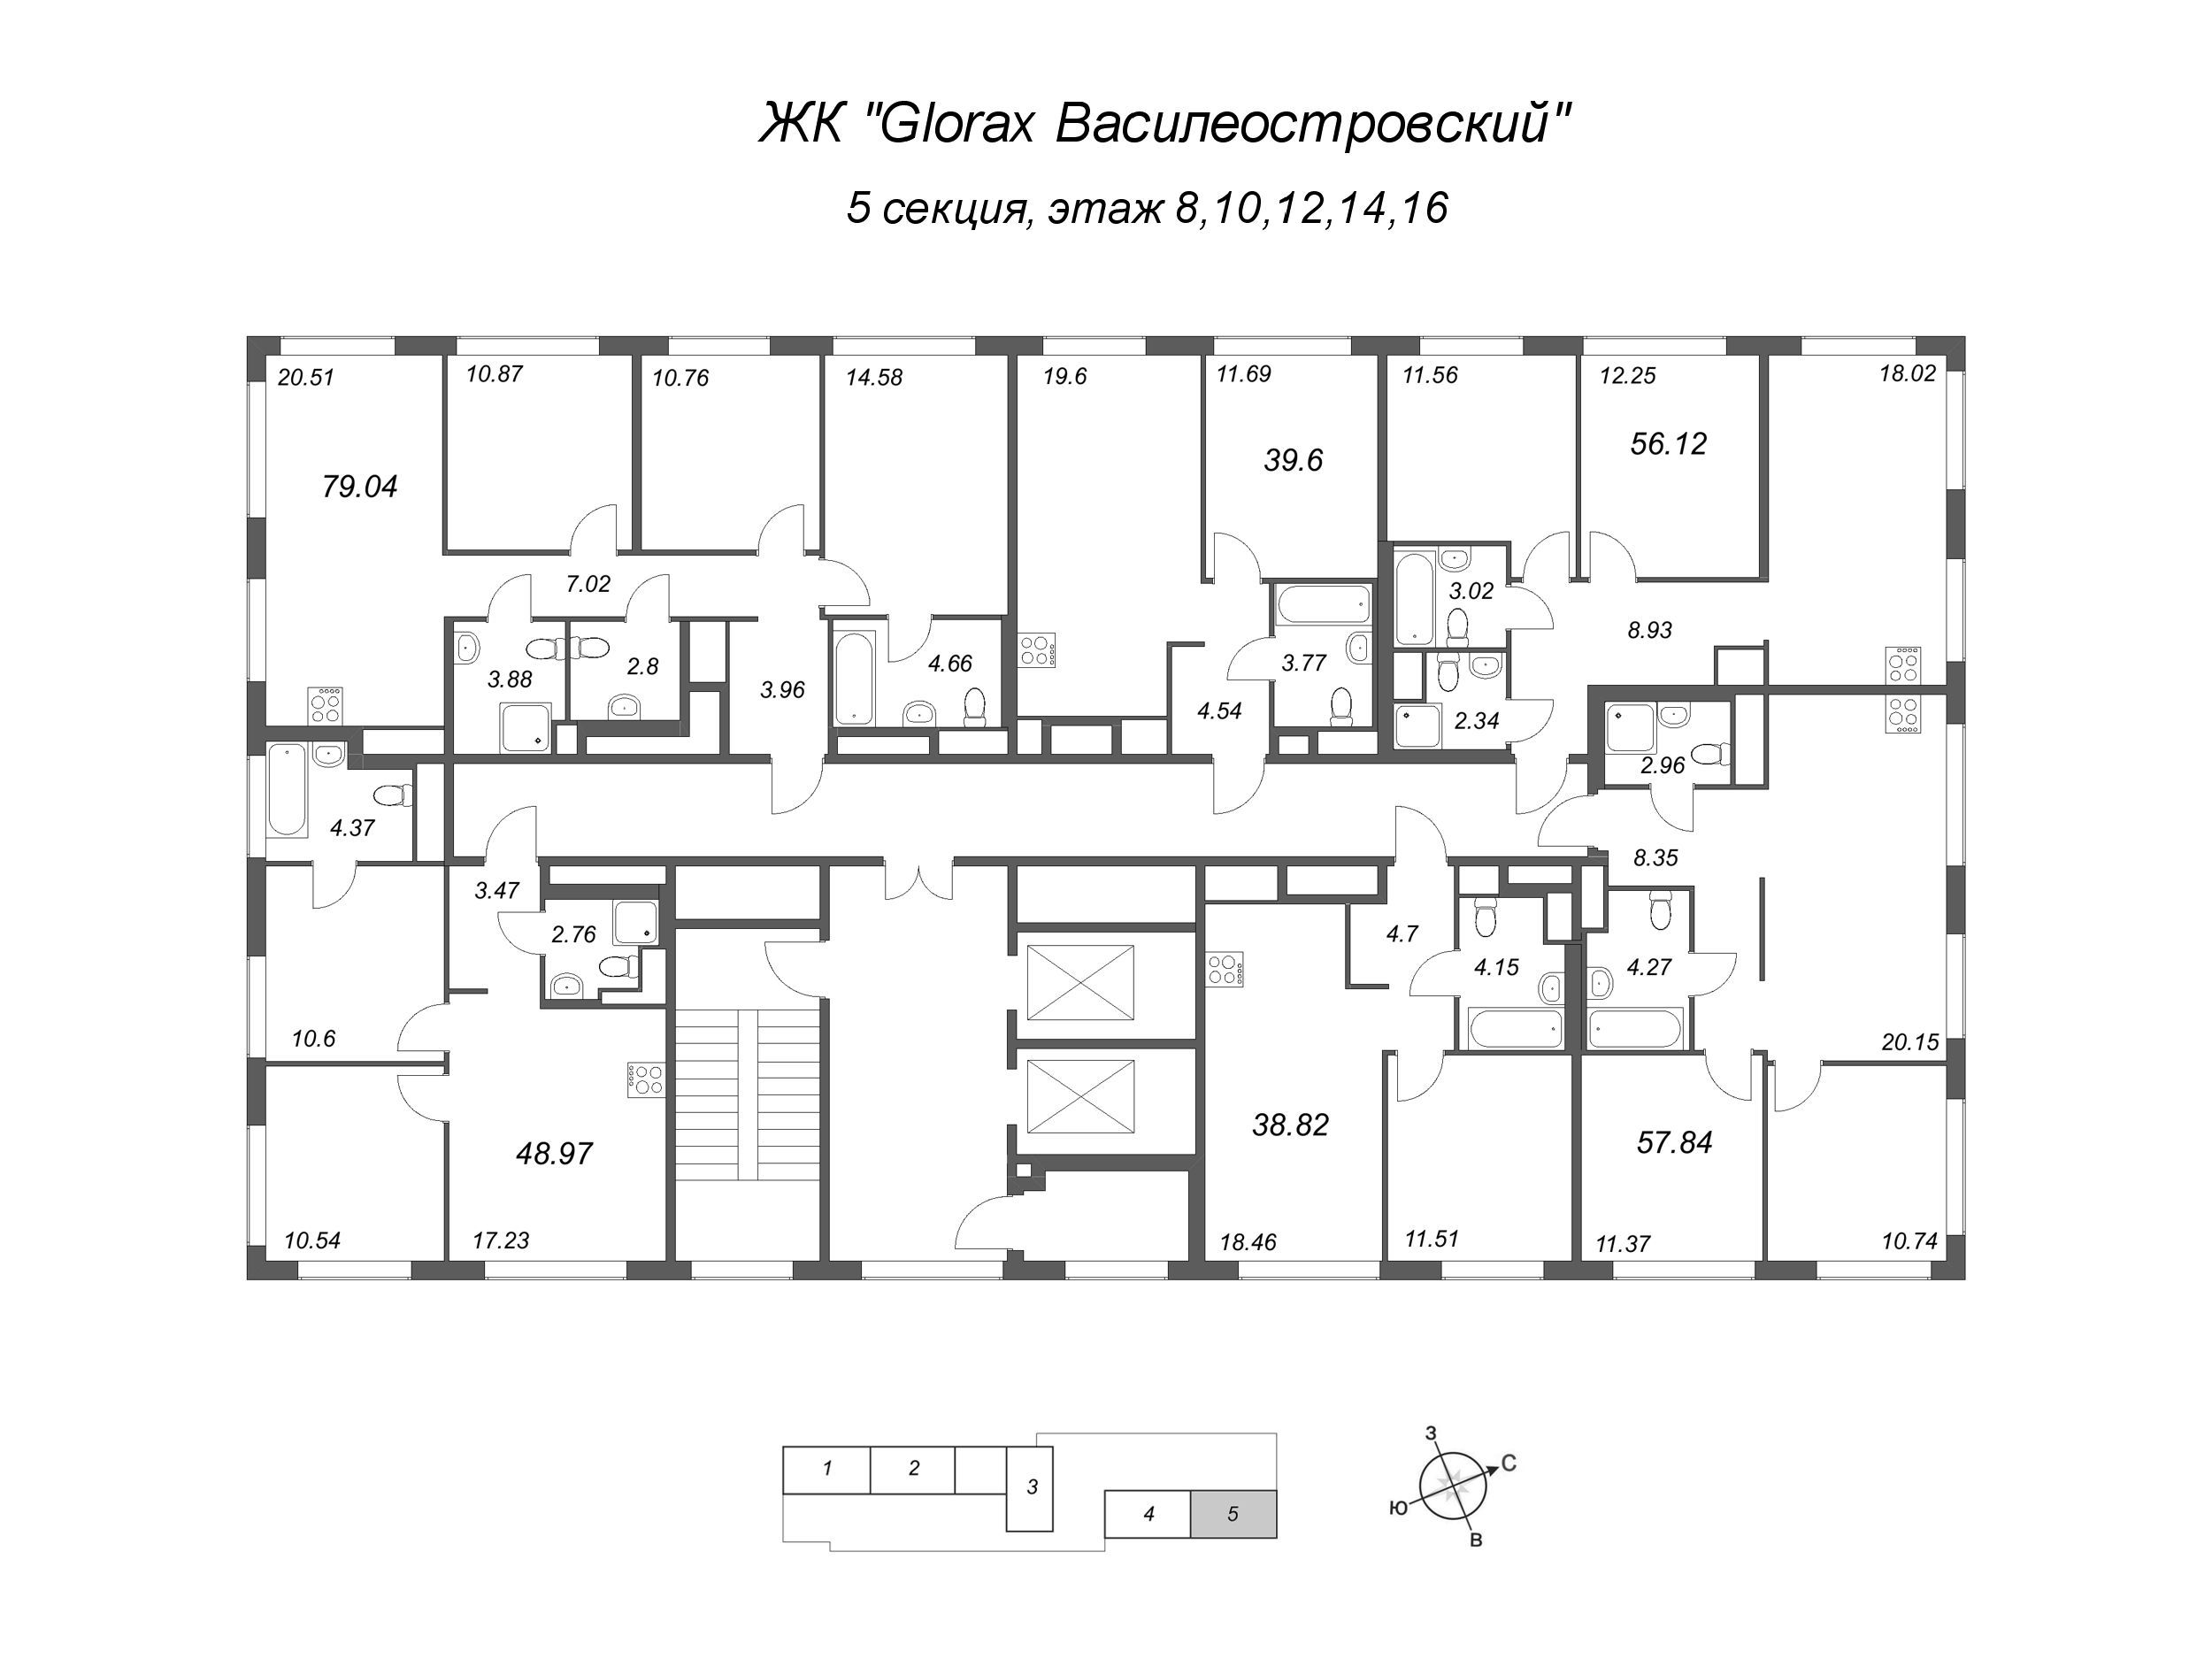 2-комнатная (Евро) квартира, 38.82 м² в ЖК "GloraX Василеостровский" - планировка этажа